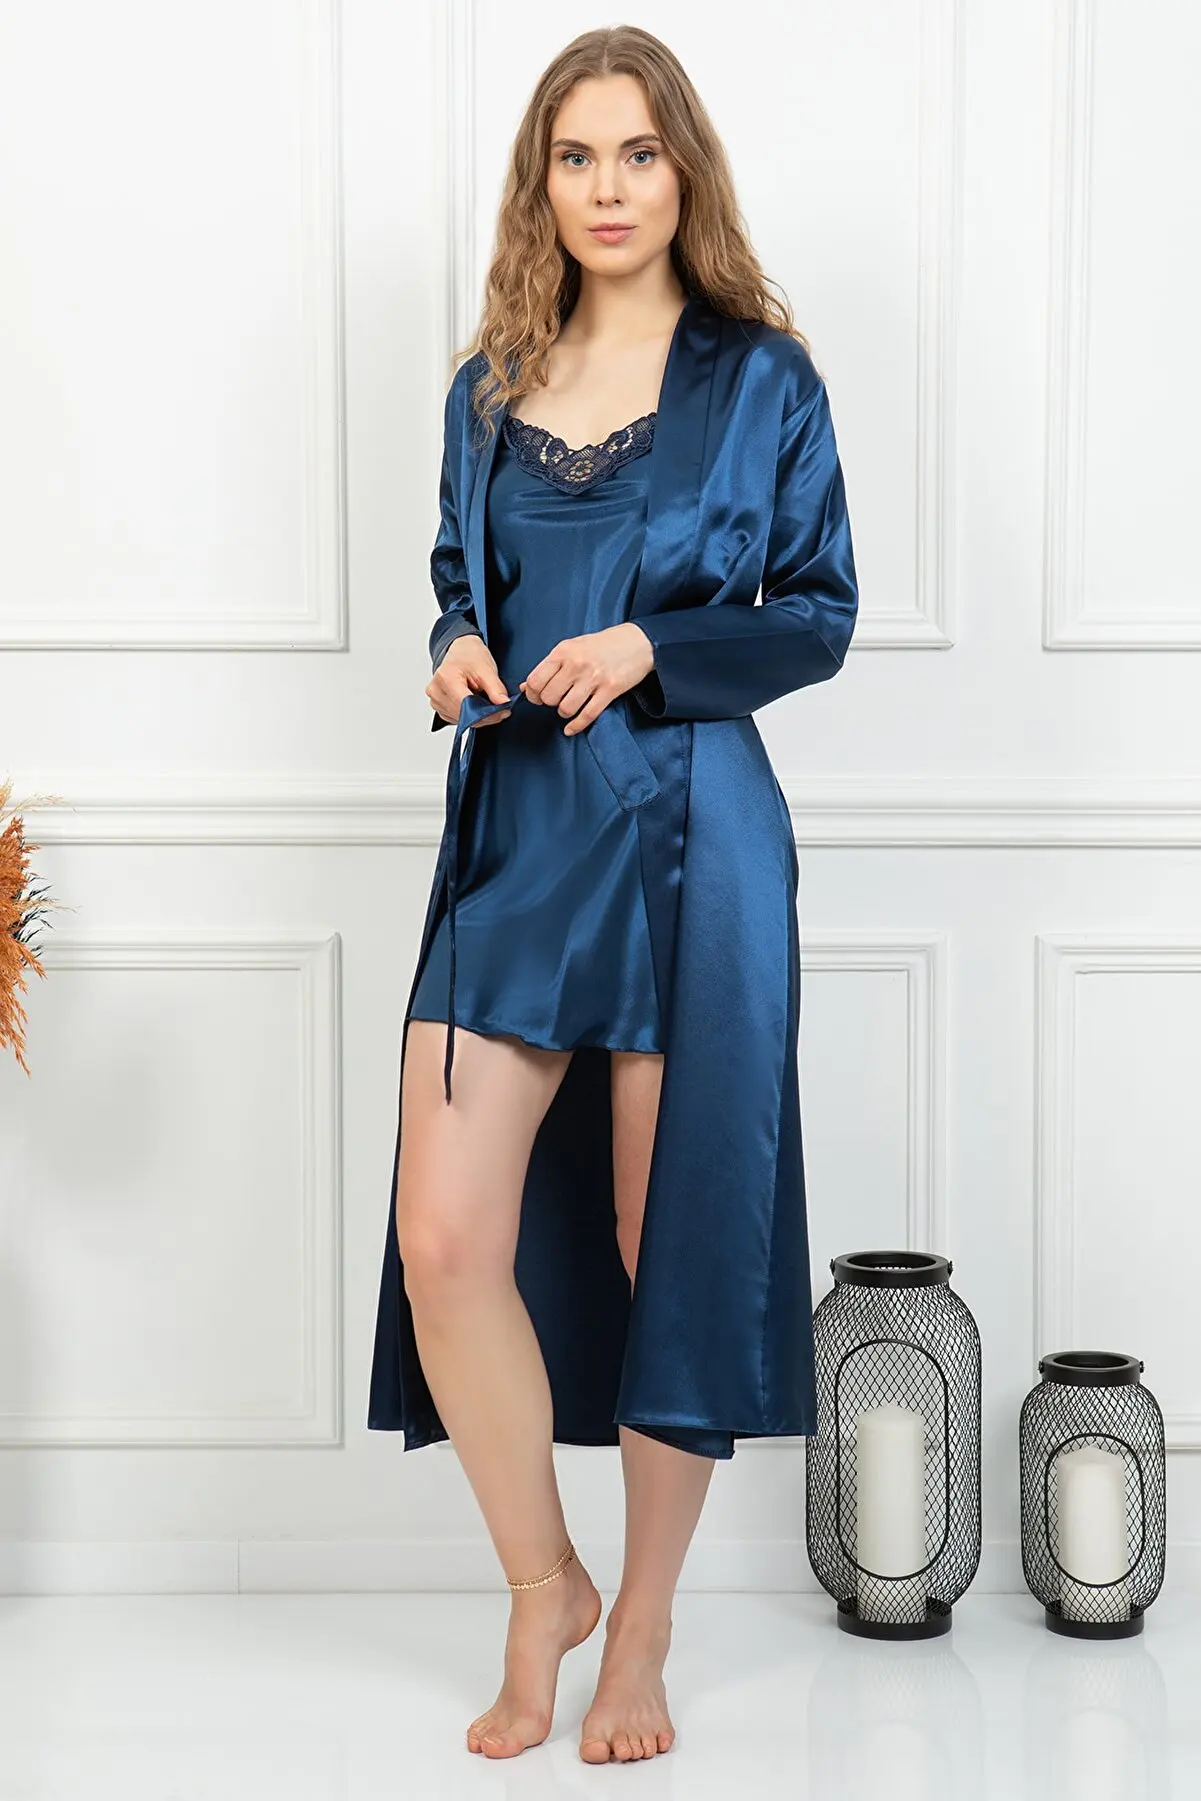 

Шелковый халат, комплект для сна из 2 предметов, женский кружевной Атласный пижамный комплект, ночная рубашка, эксклюзивная женская ночная с...